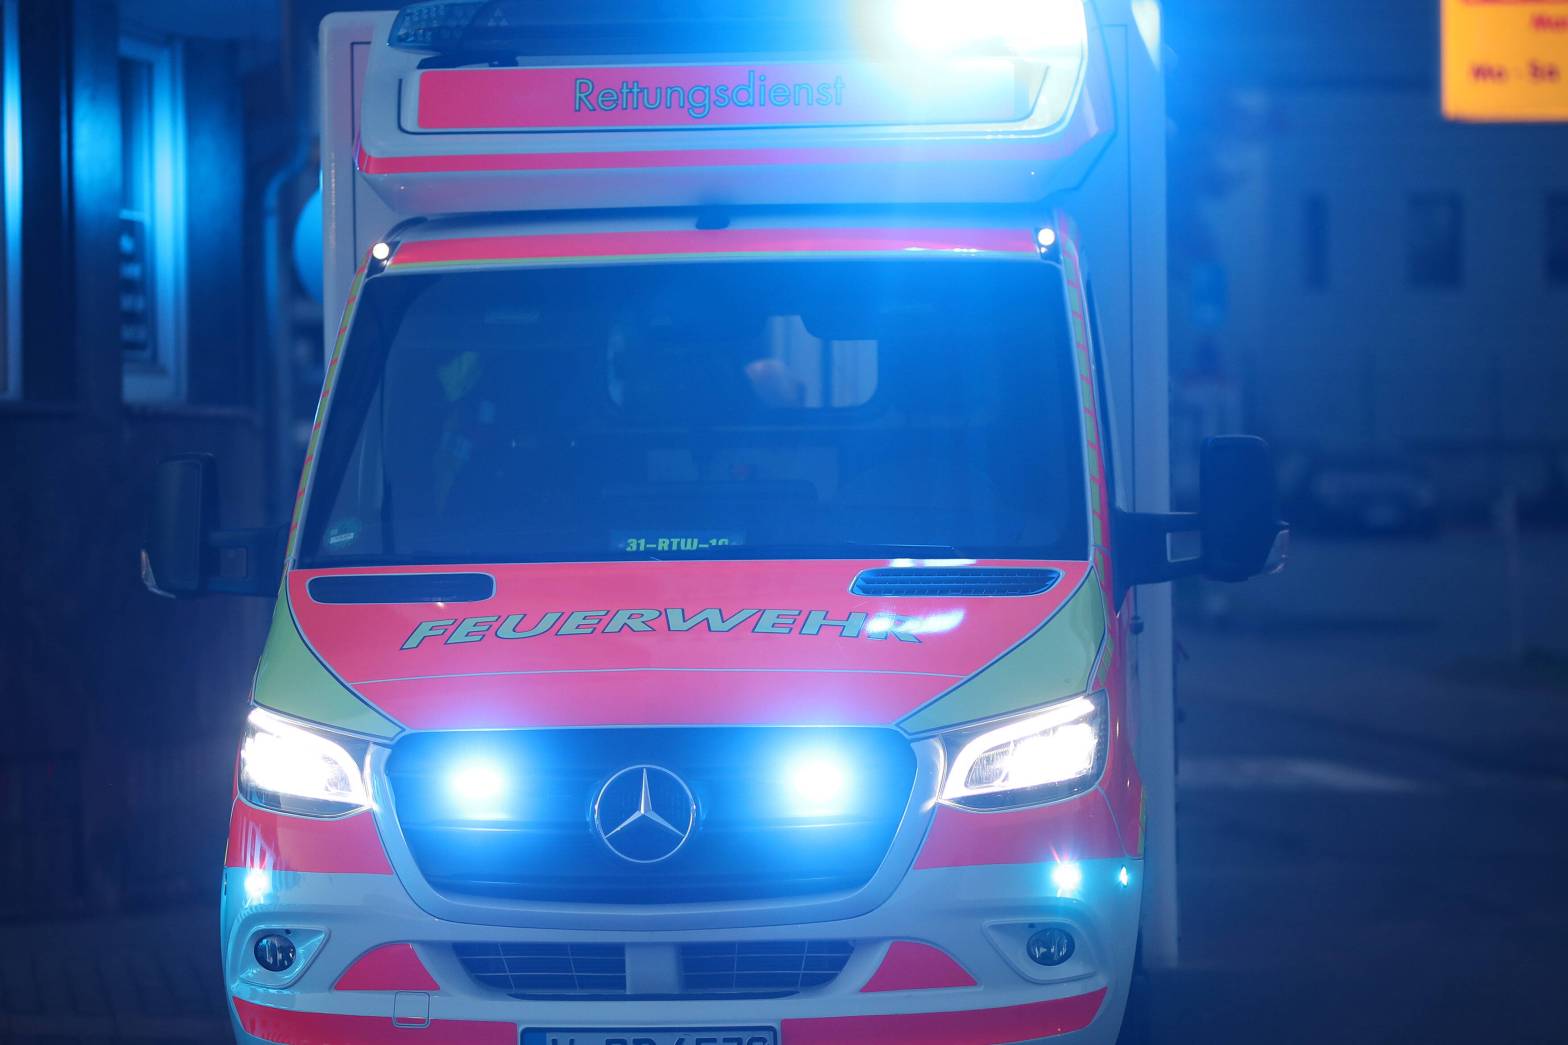 Mülheim: Tödlicher Unfall – Fußgängerin stirbt nach Zusammenprall mit Fahrrad